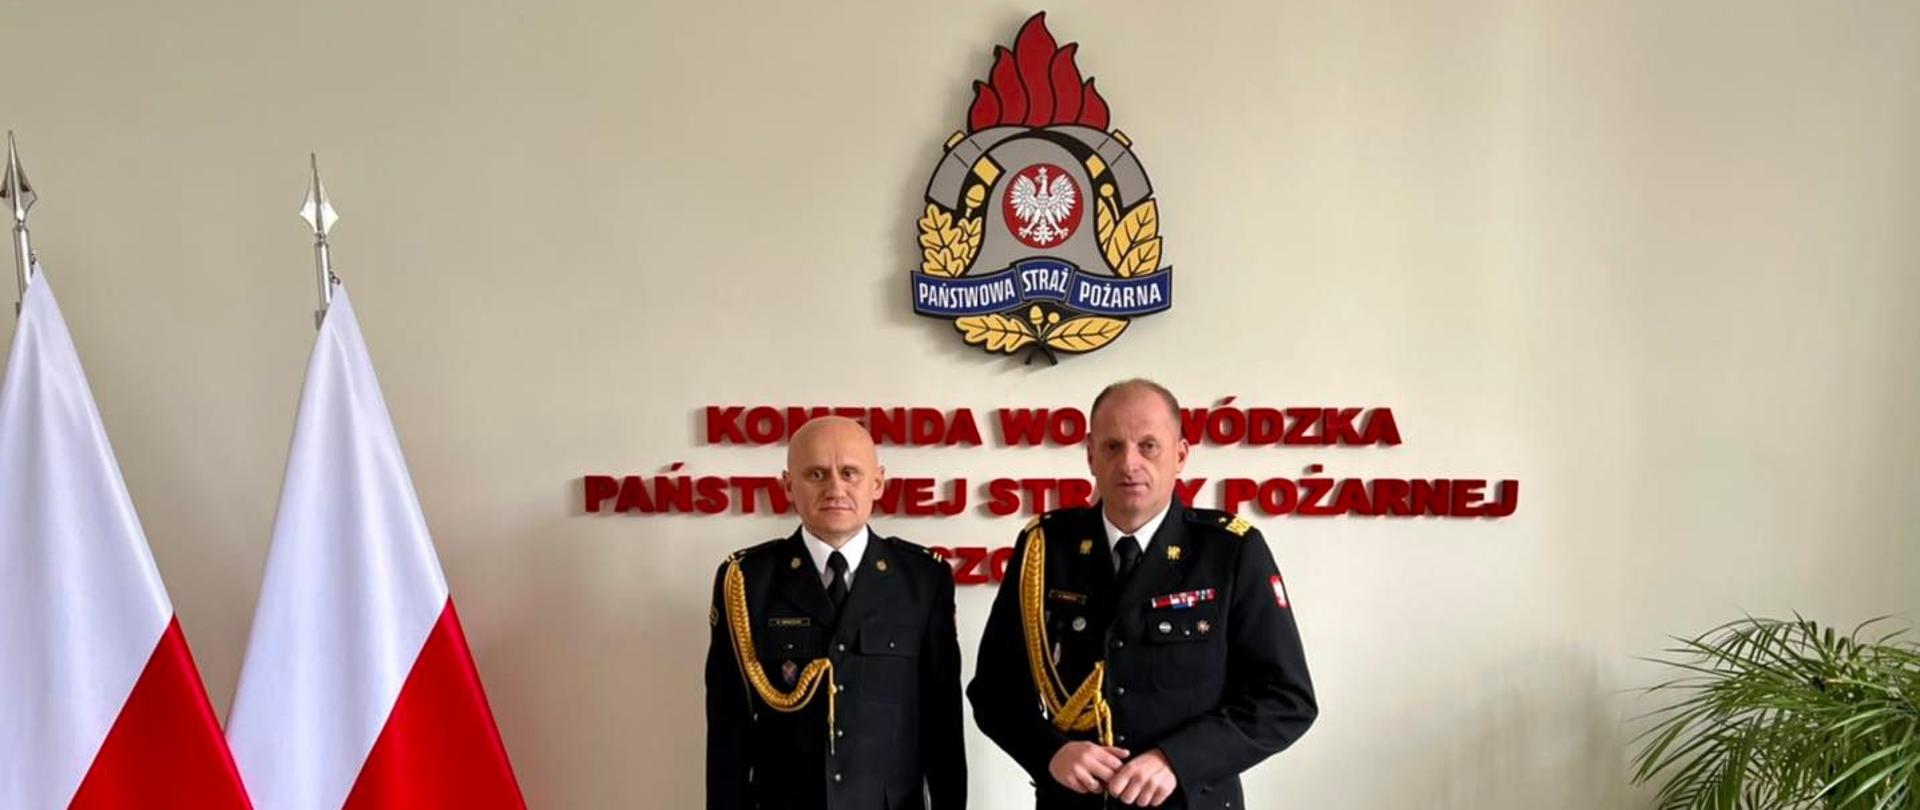 Na tle ścianki z logiem PSP i flagami stoi Komendant Wojewódzki i Komendant Powiatowy w mundurach galowych. 